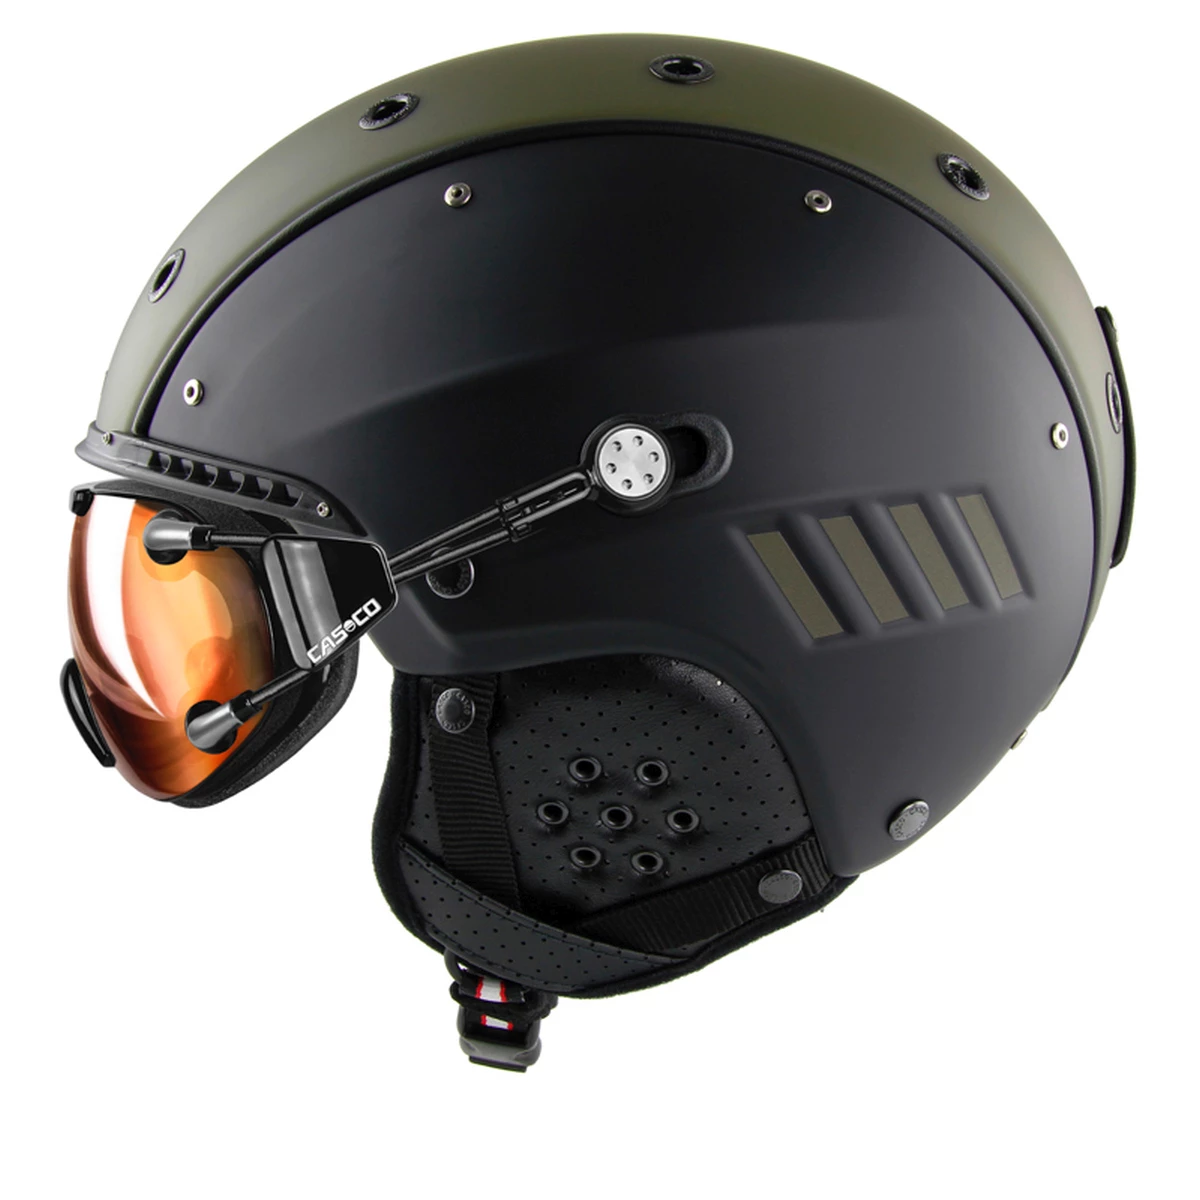 Herstellen Zuidwest Korea Casco SP-4 Ski Helm - Helmen - Accessoires - Wintersport - Intersport van  den Broek / Biggelaar